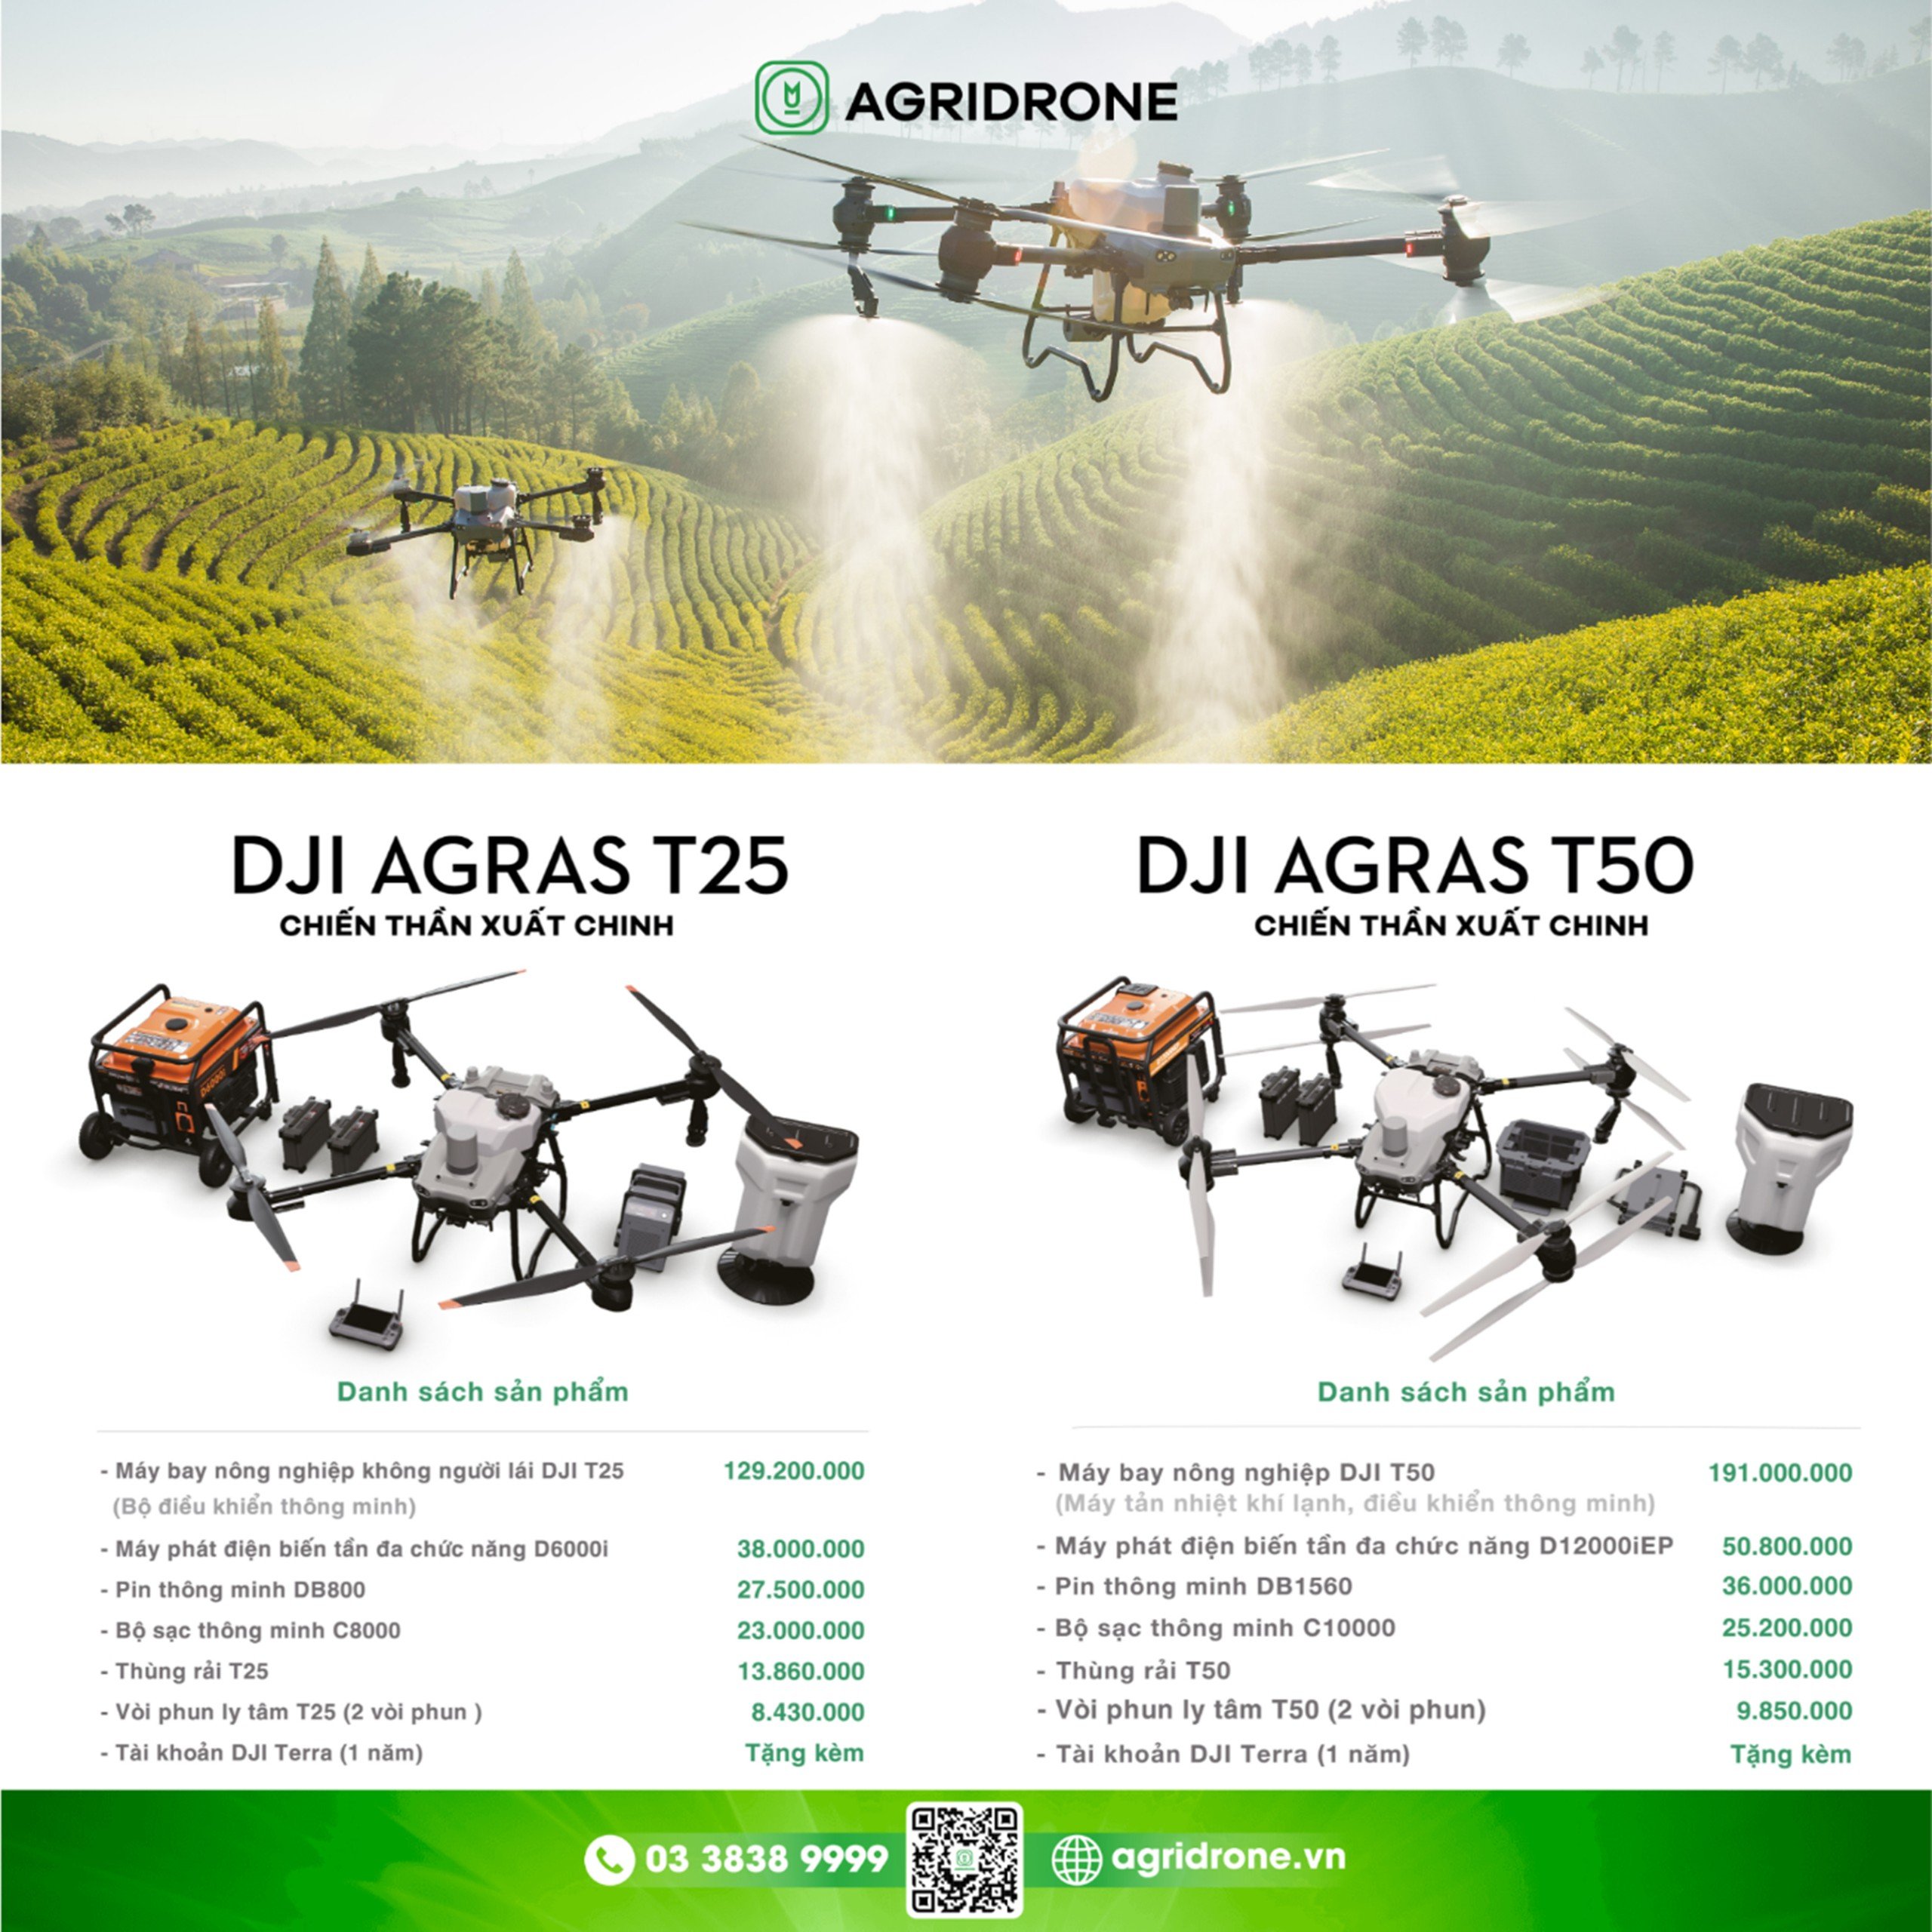 Bảng giá máy bay DJI T50 và T25 của công ty AgriDrone.